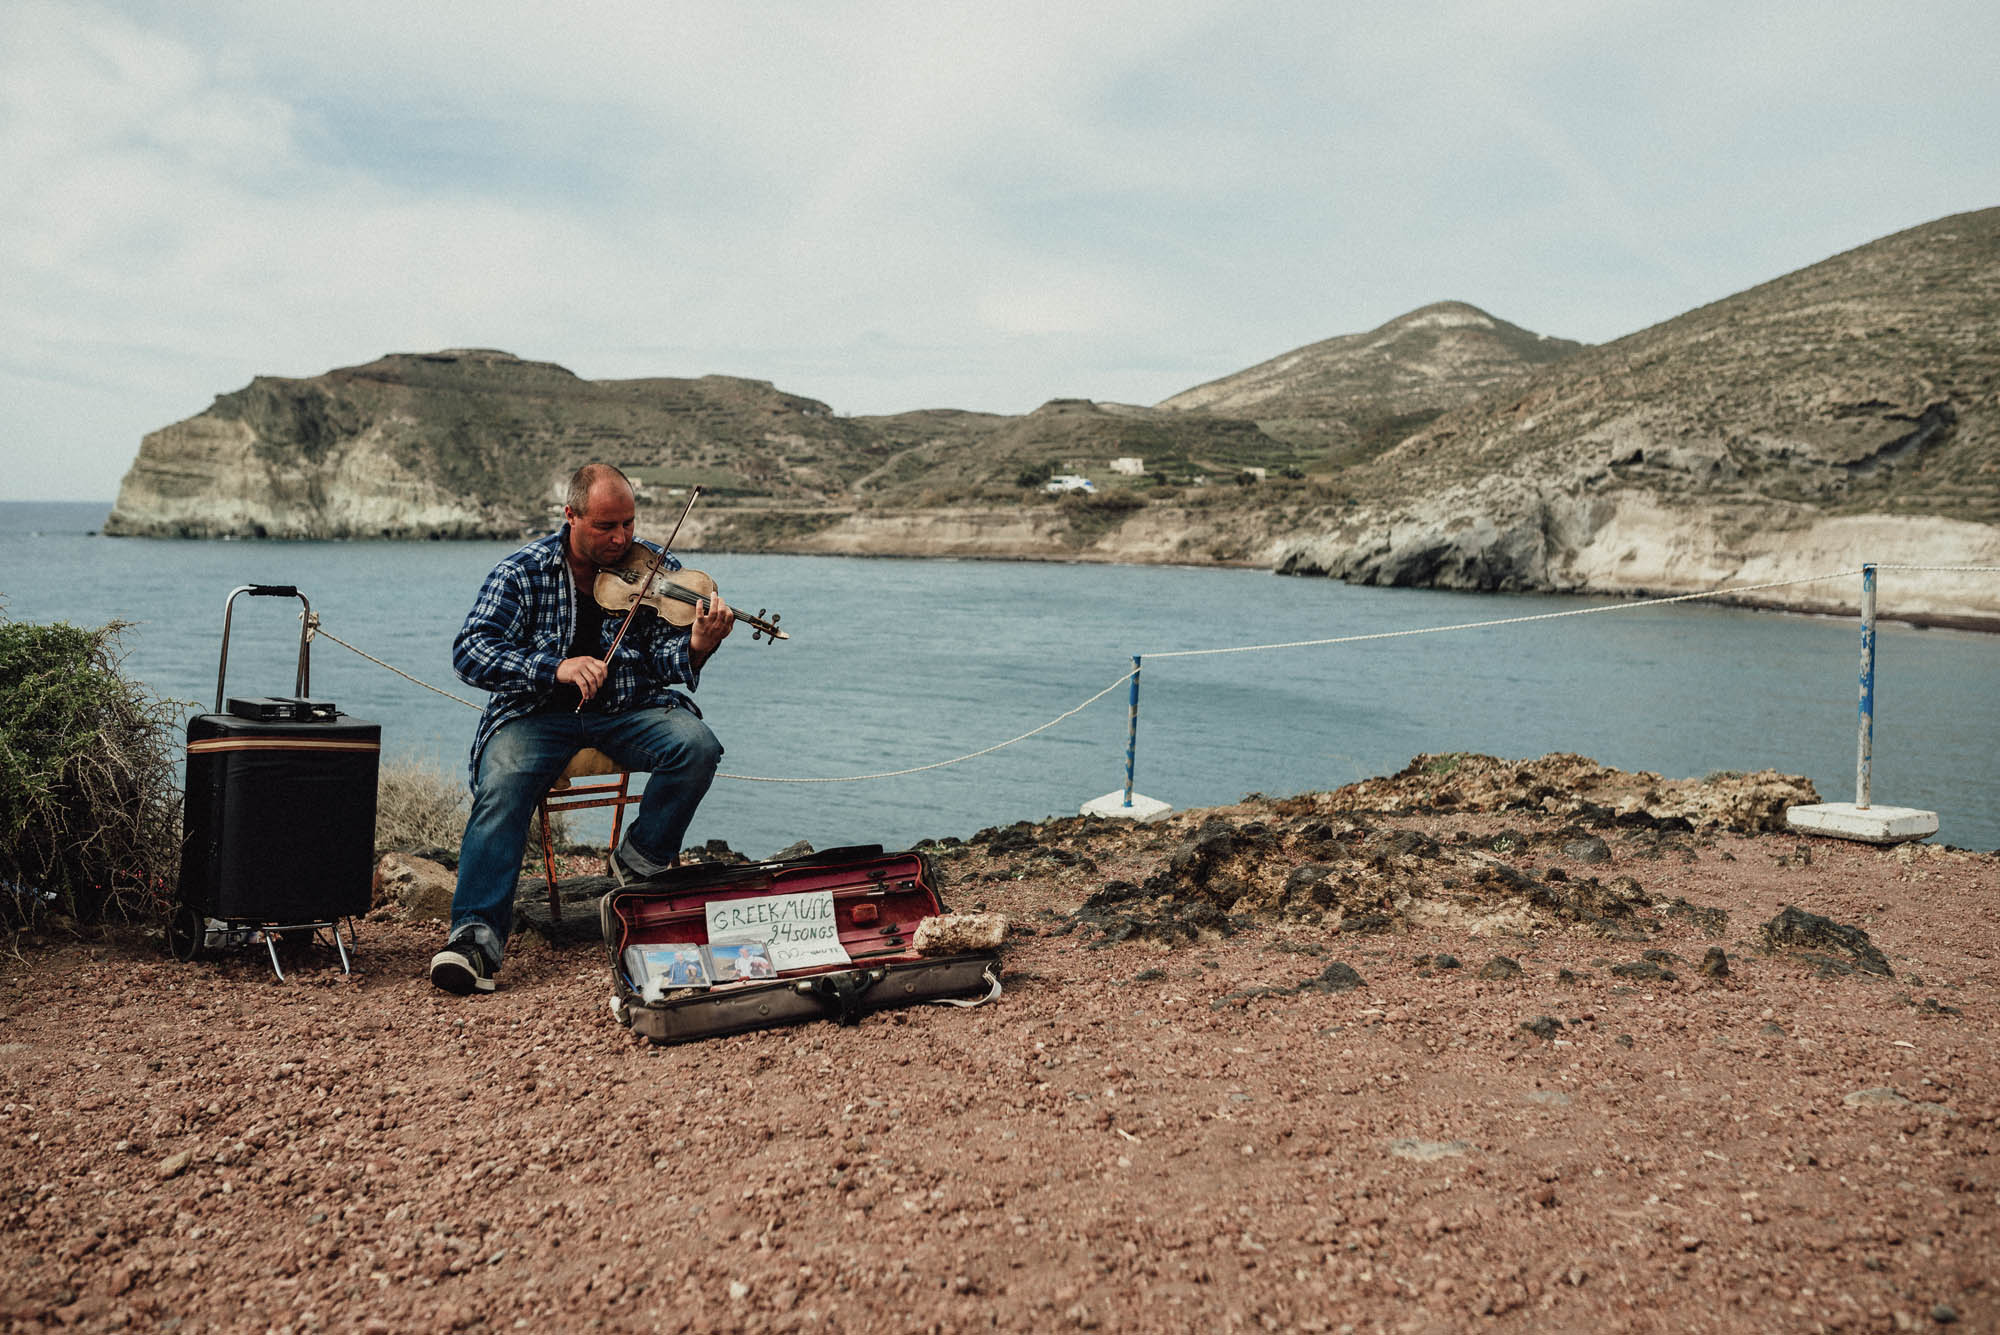 muzyk grające na instrumencie na brzegu morza, w tle widok na plaże i morze